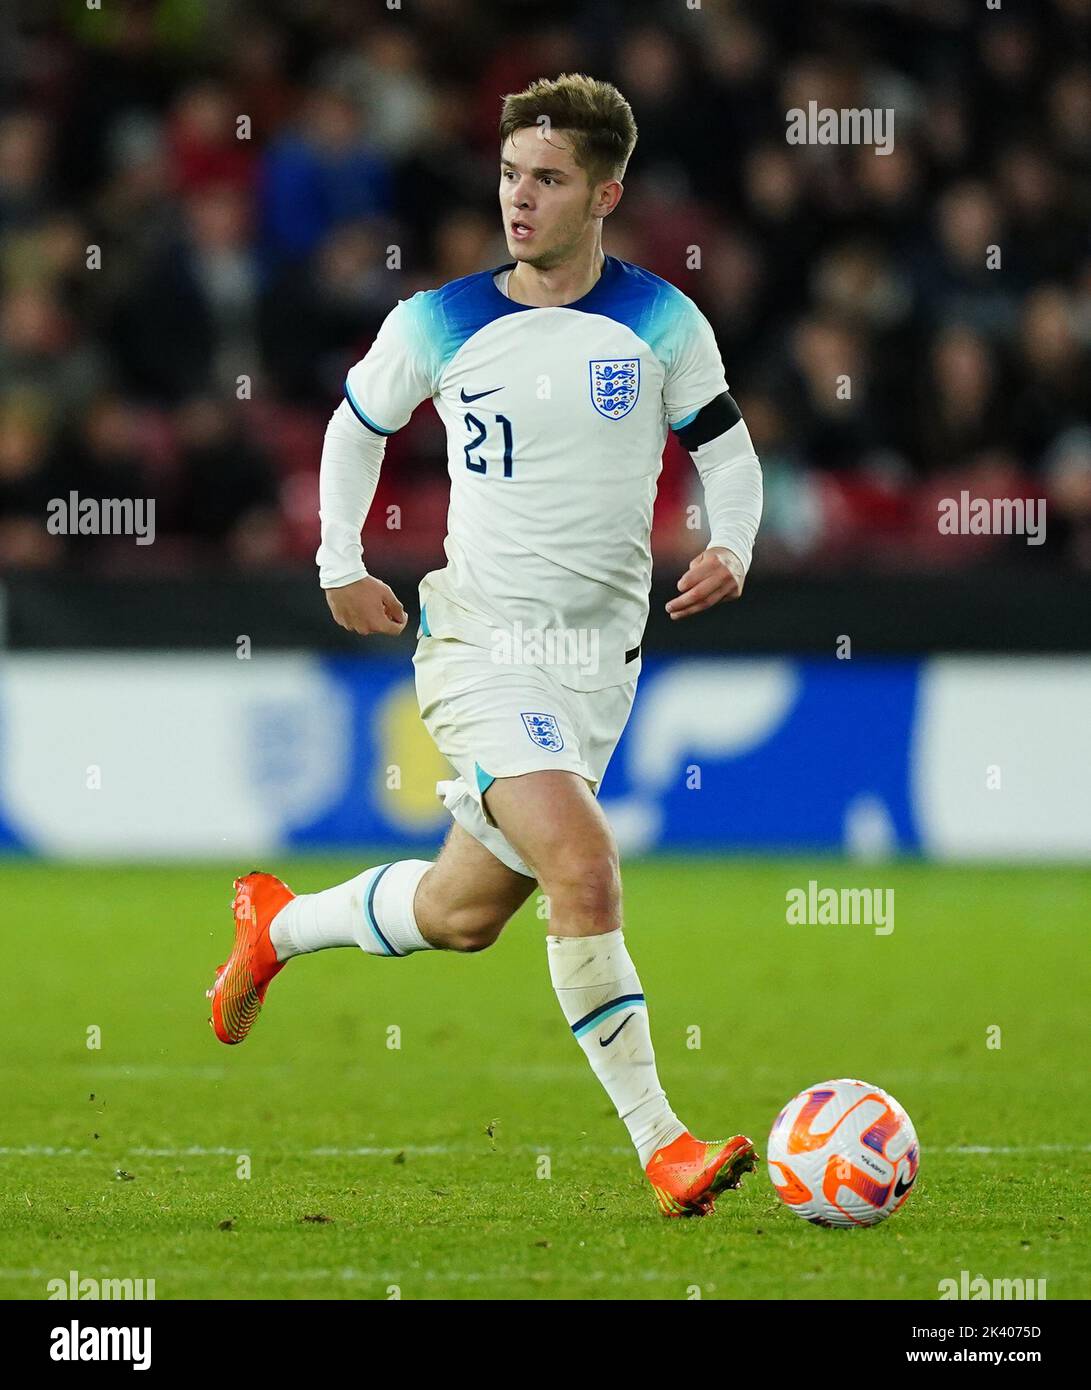 James McAtee in Inghilterra durante la partita internazionale amichevole Under-21 a Bramall Lane, Sheffield. Data immagine: Martedì 27 settembre 2022. Foto Stock